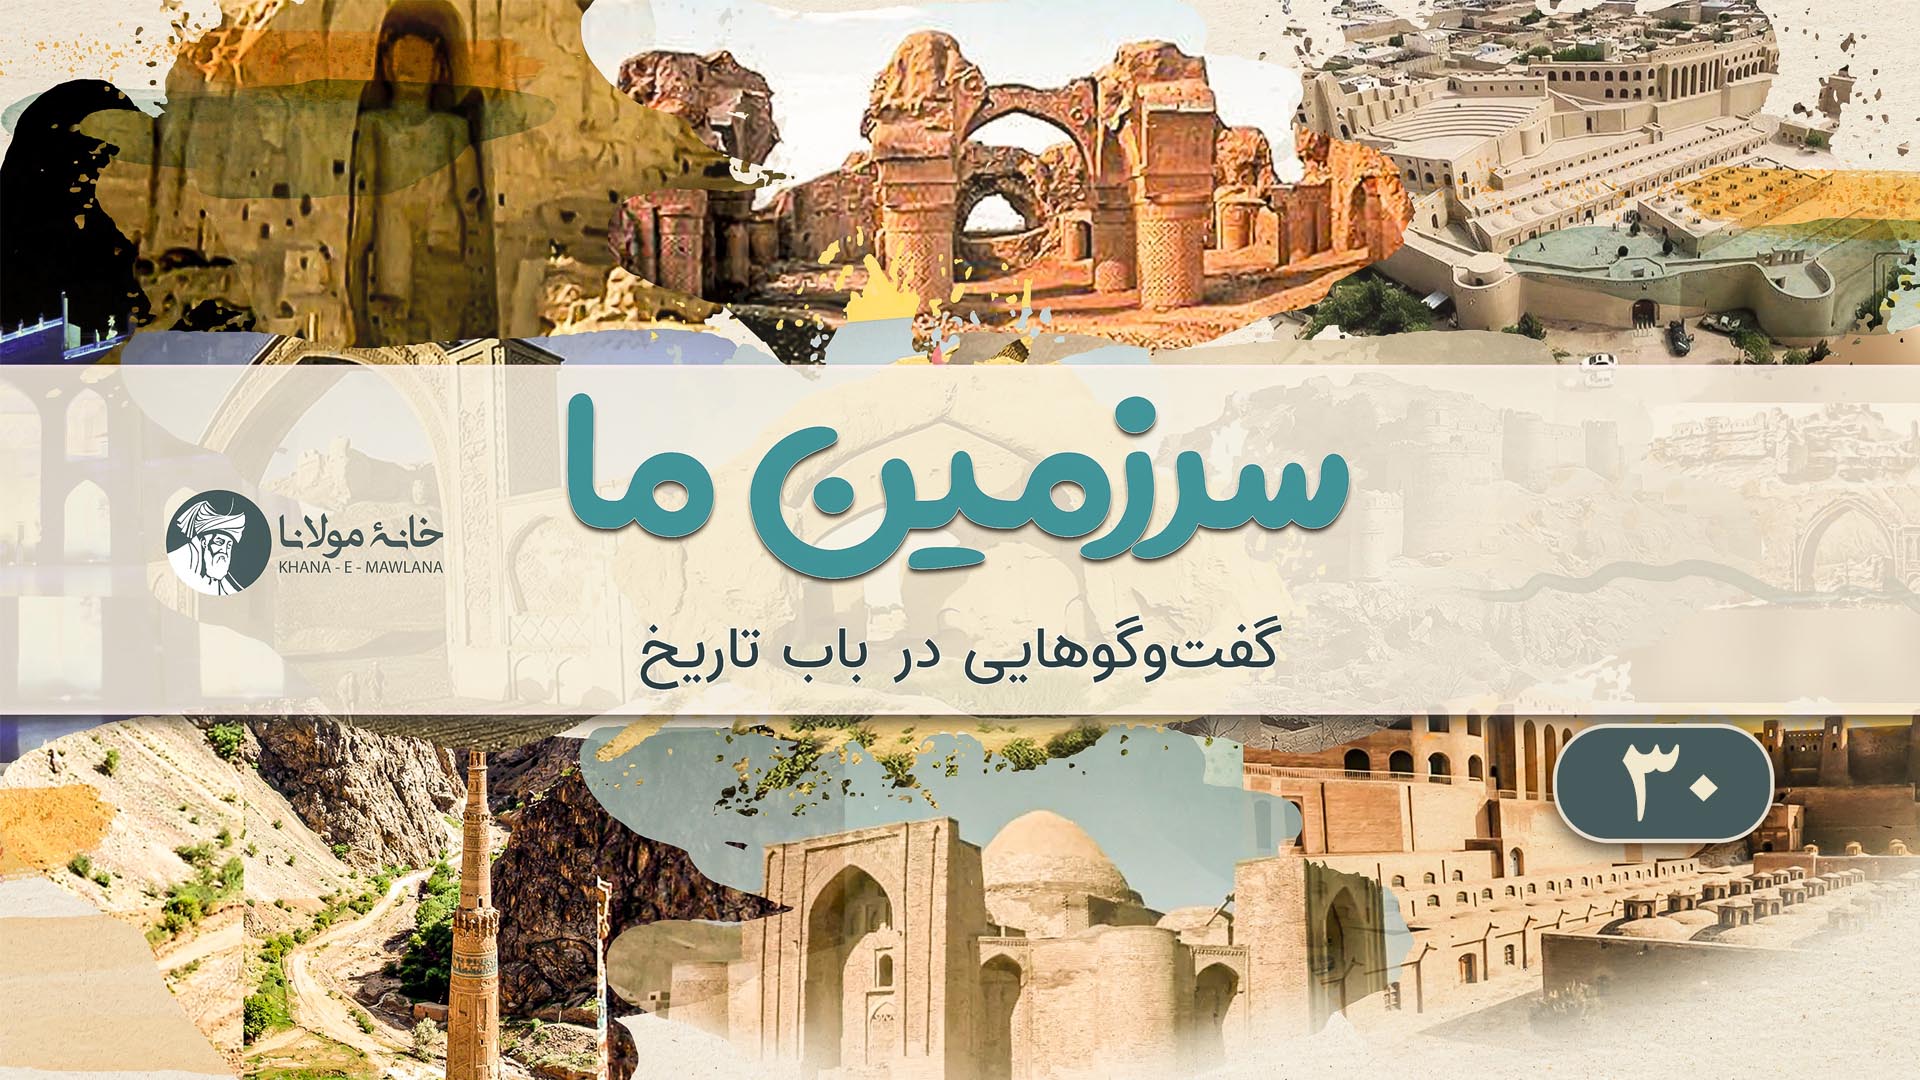 خاستگاه و جغرافیای کاربردی زبان فارسی، گذشته و امروز